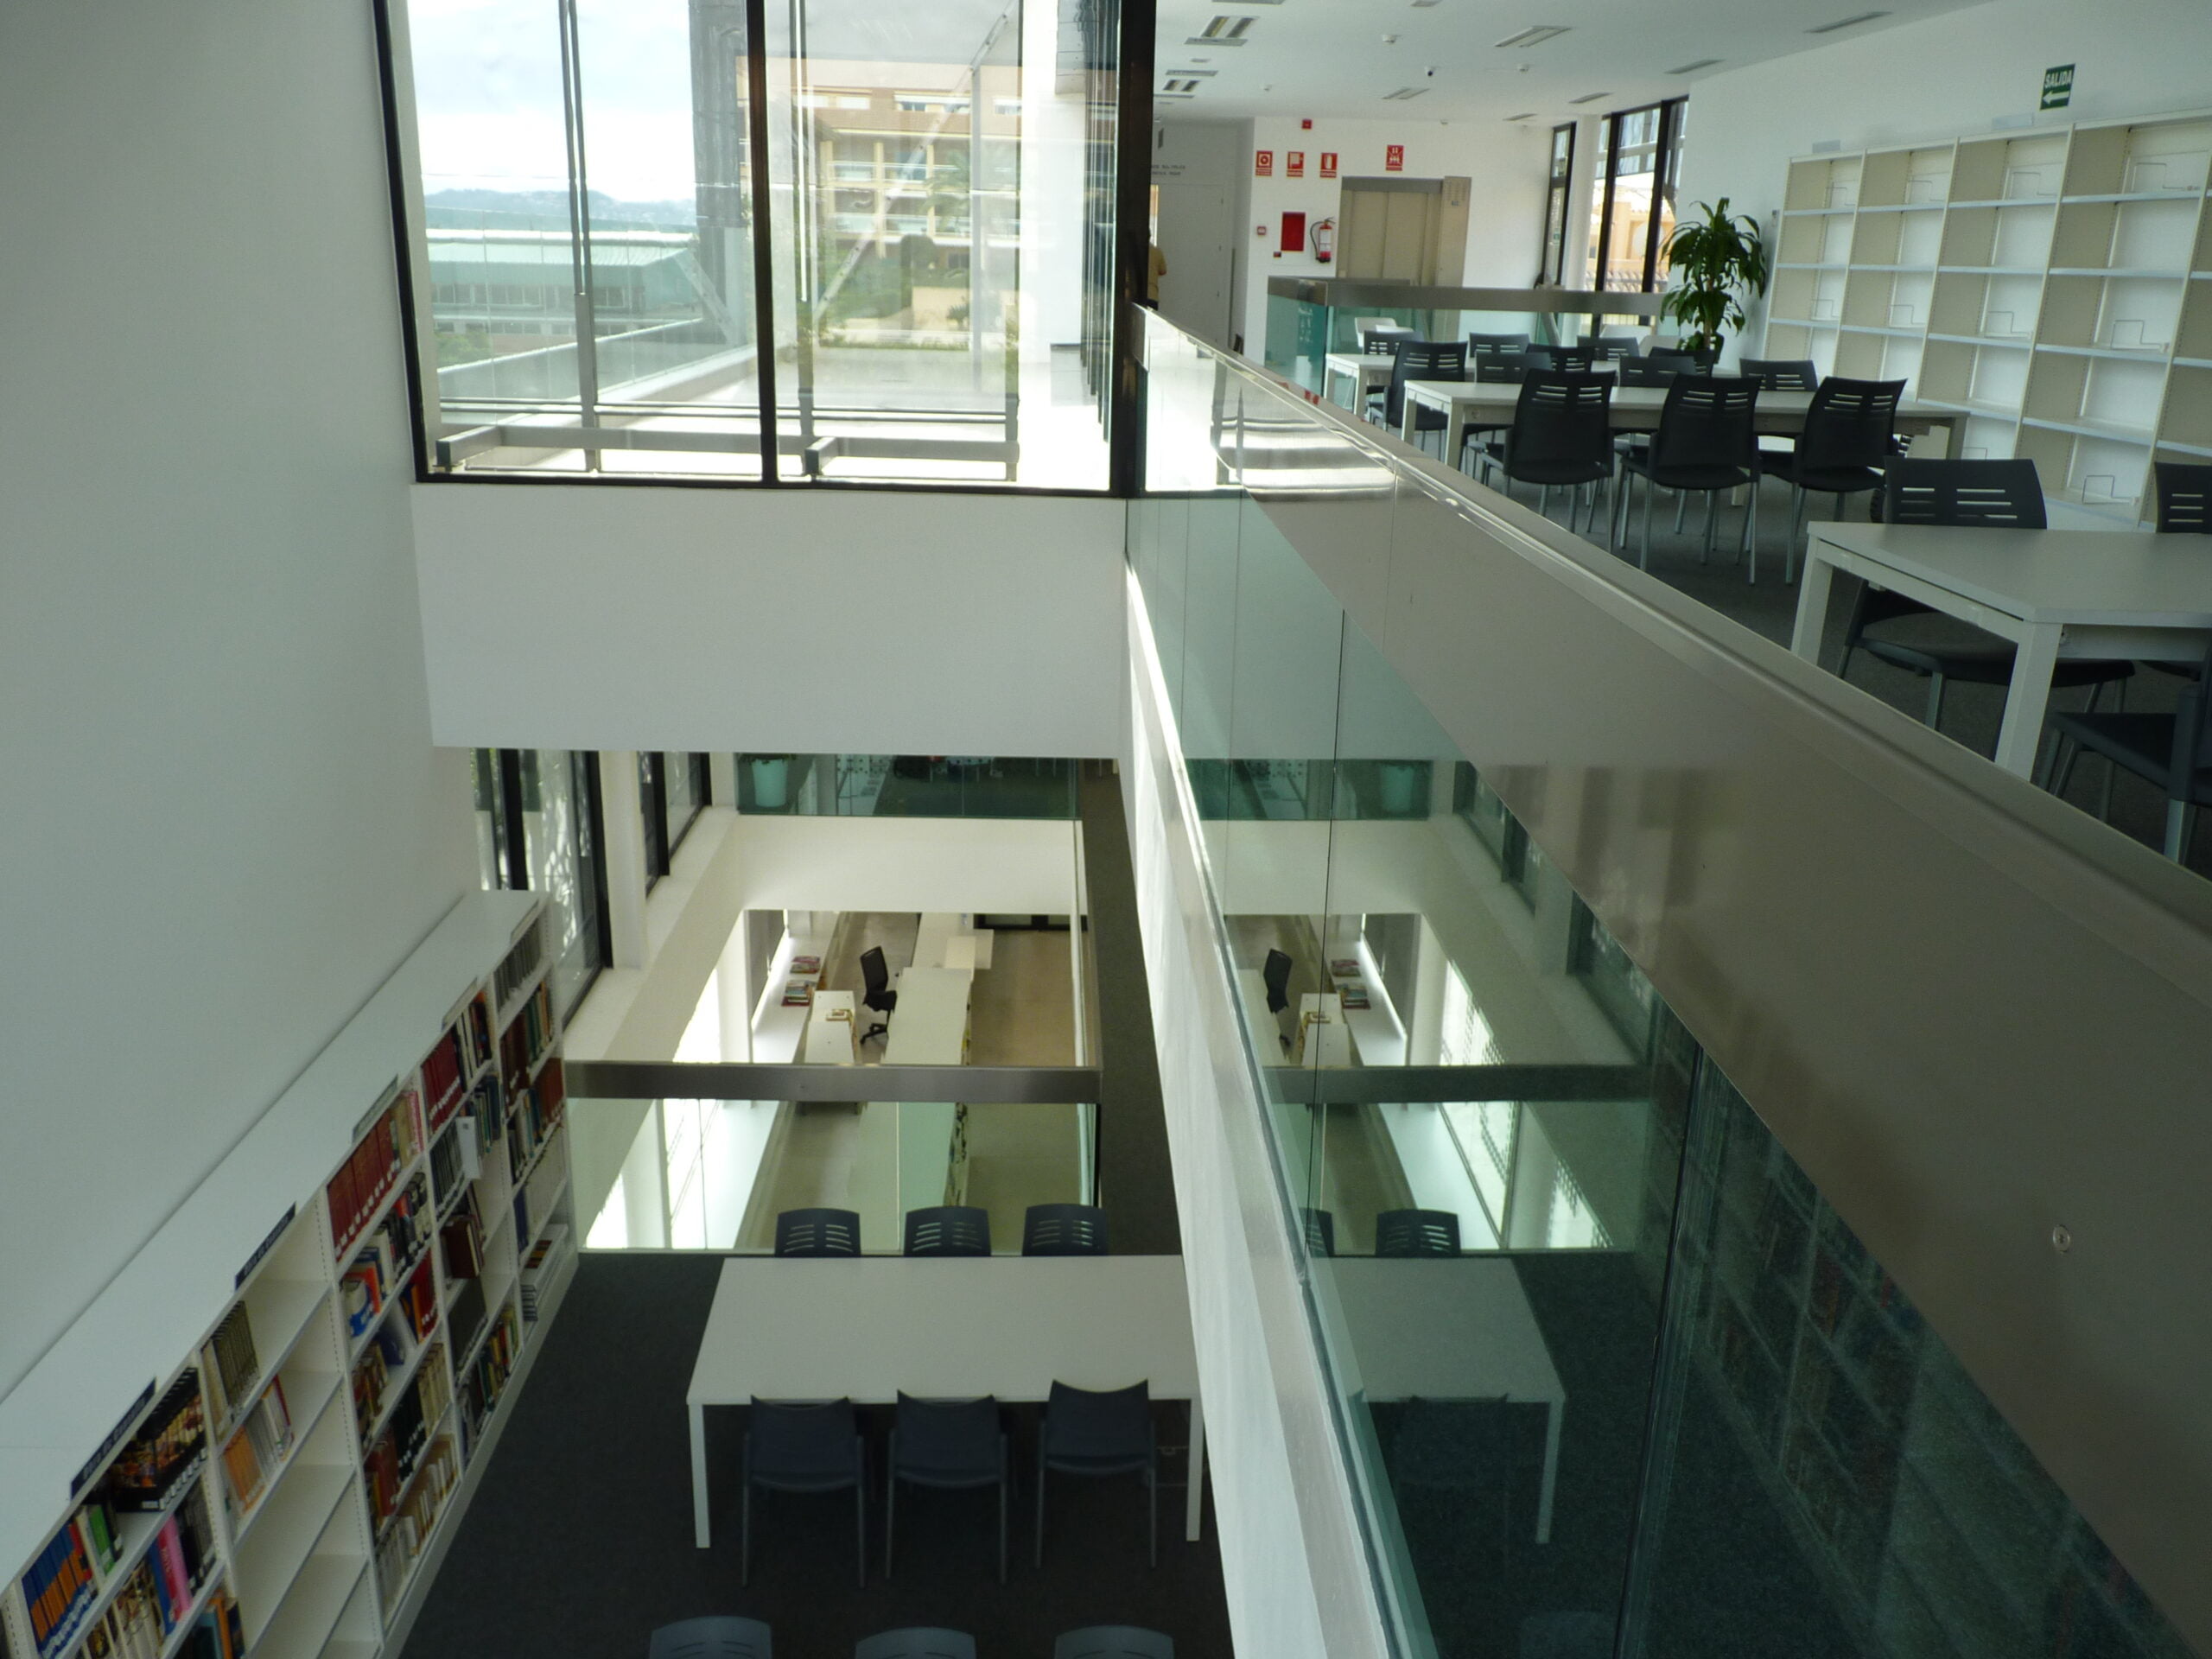 Salas de consulta y estudio en las plantas superiores de la Biblioteca de Duanes. Foto AMX